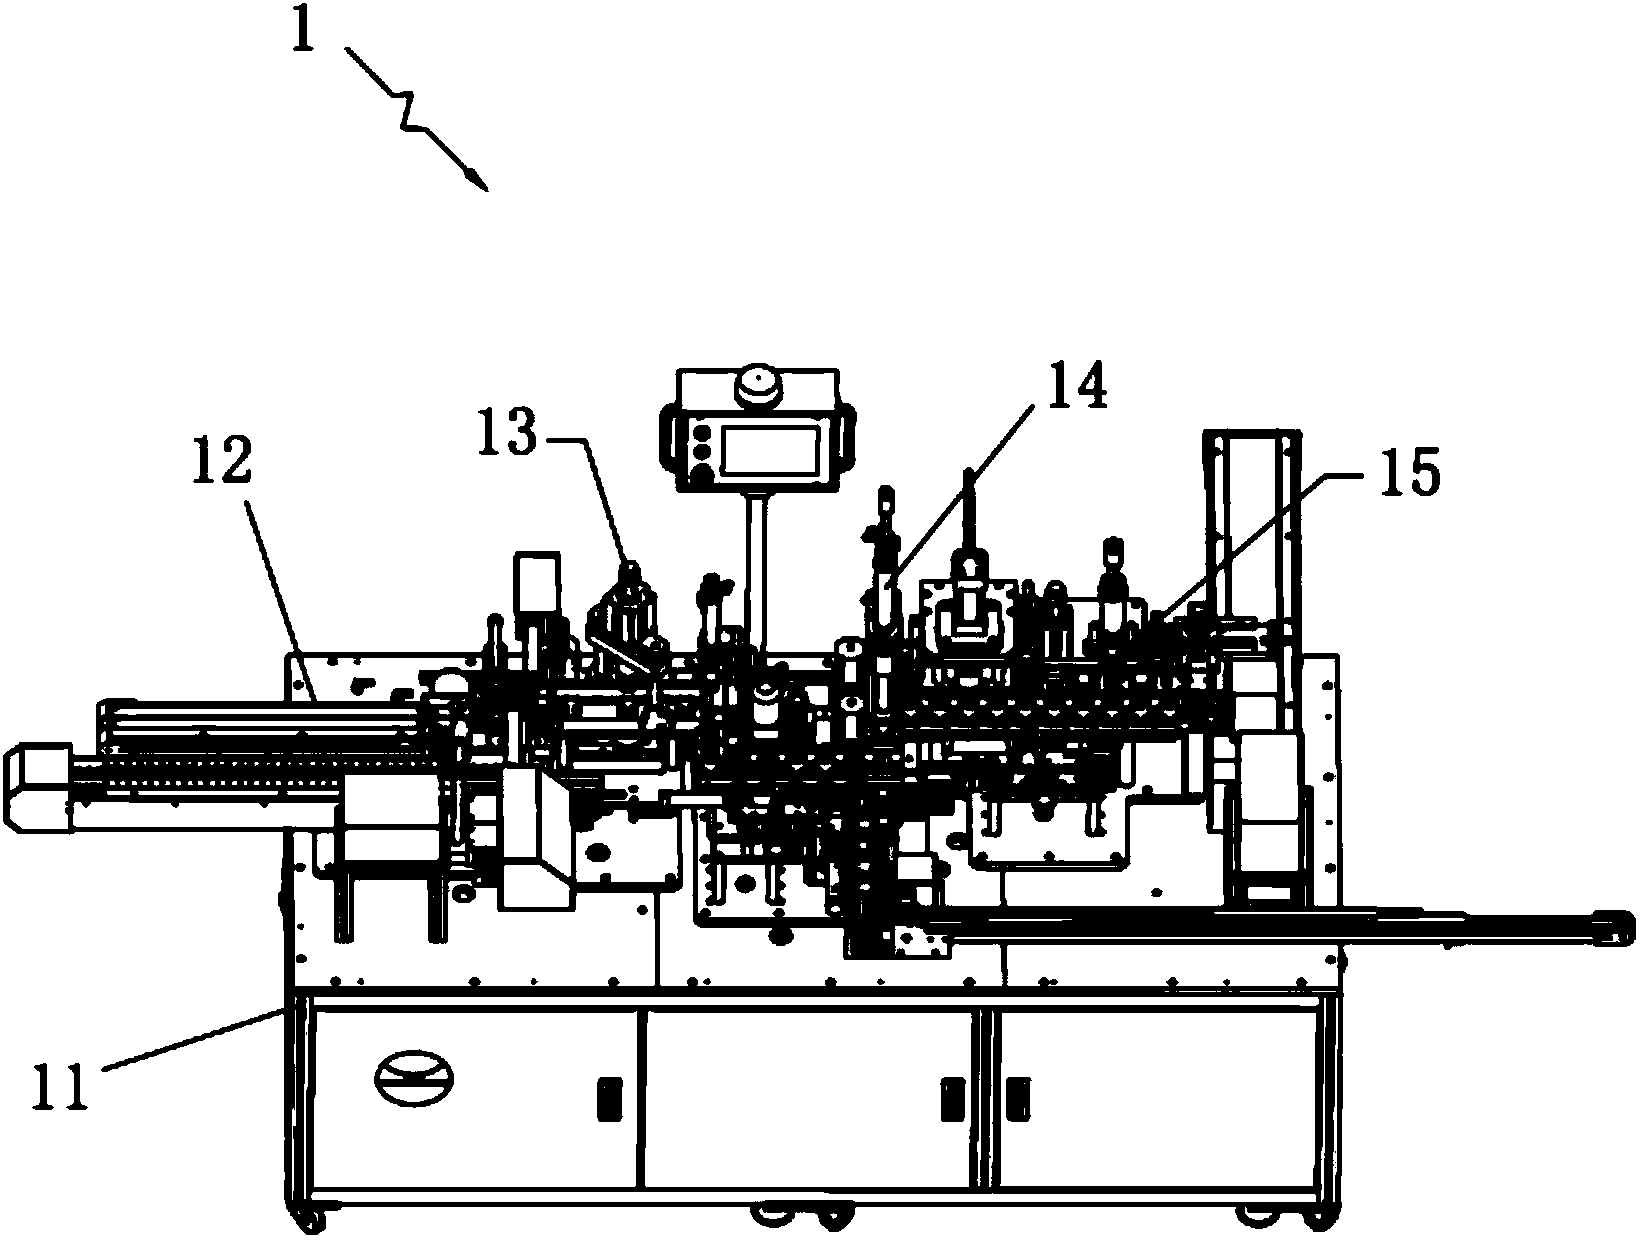 Automatic assembling machine of micro motors